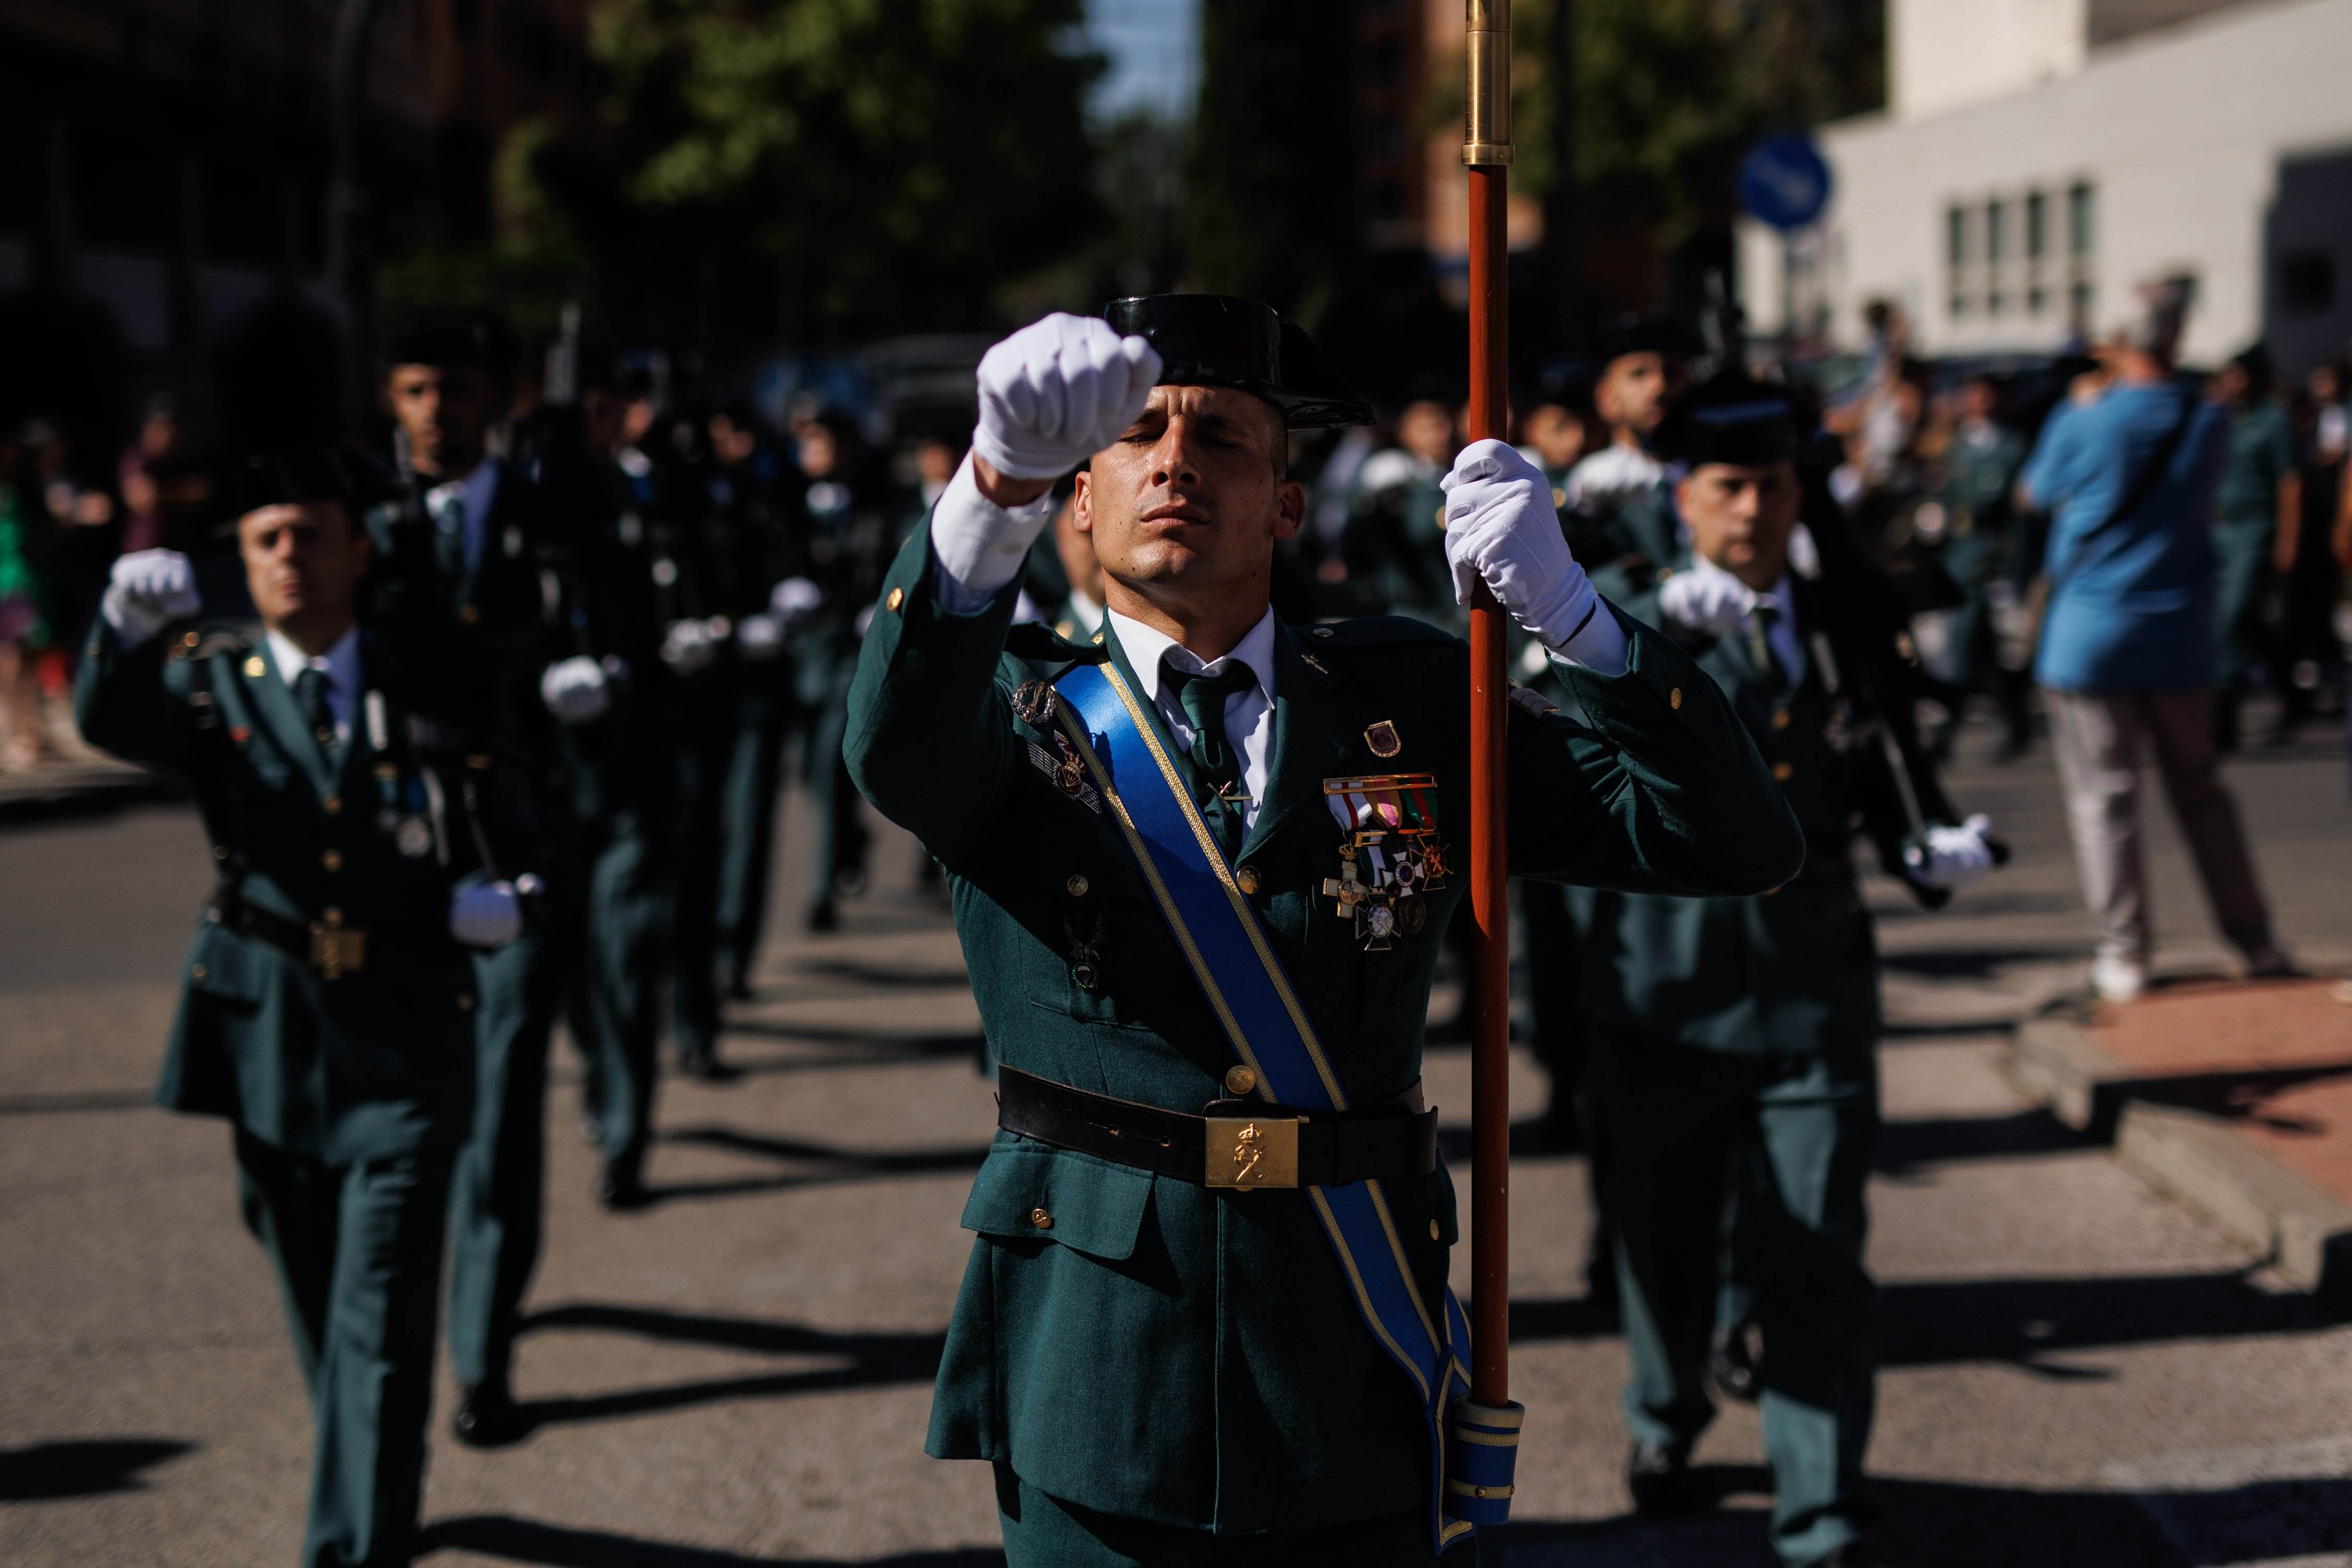 ¿Crees que se deben suprimir los desfiles militares españoles?